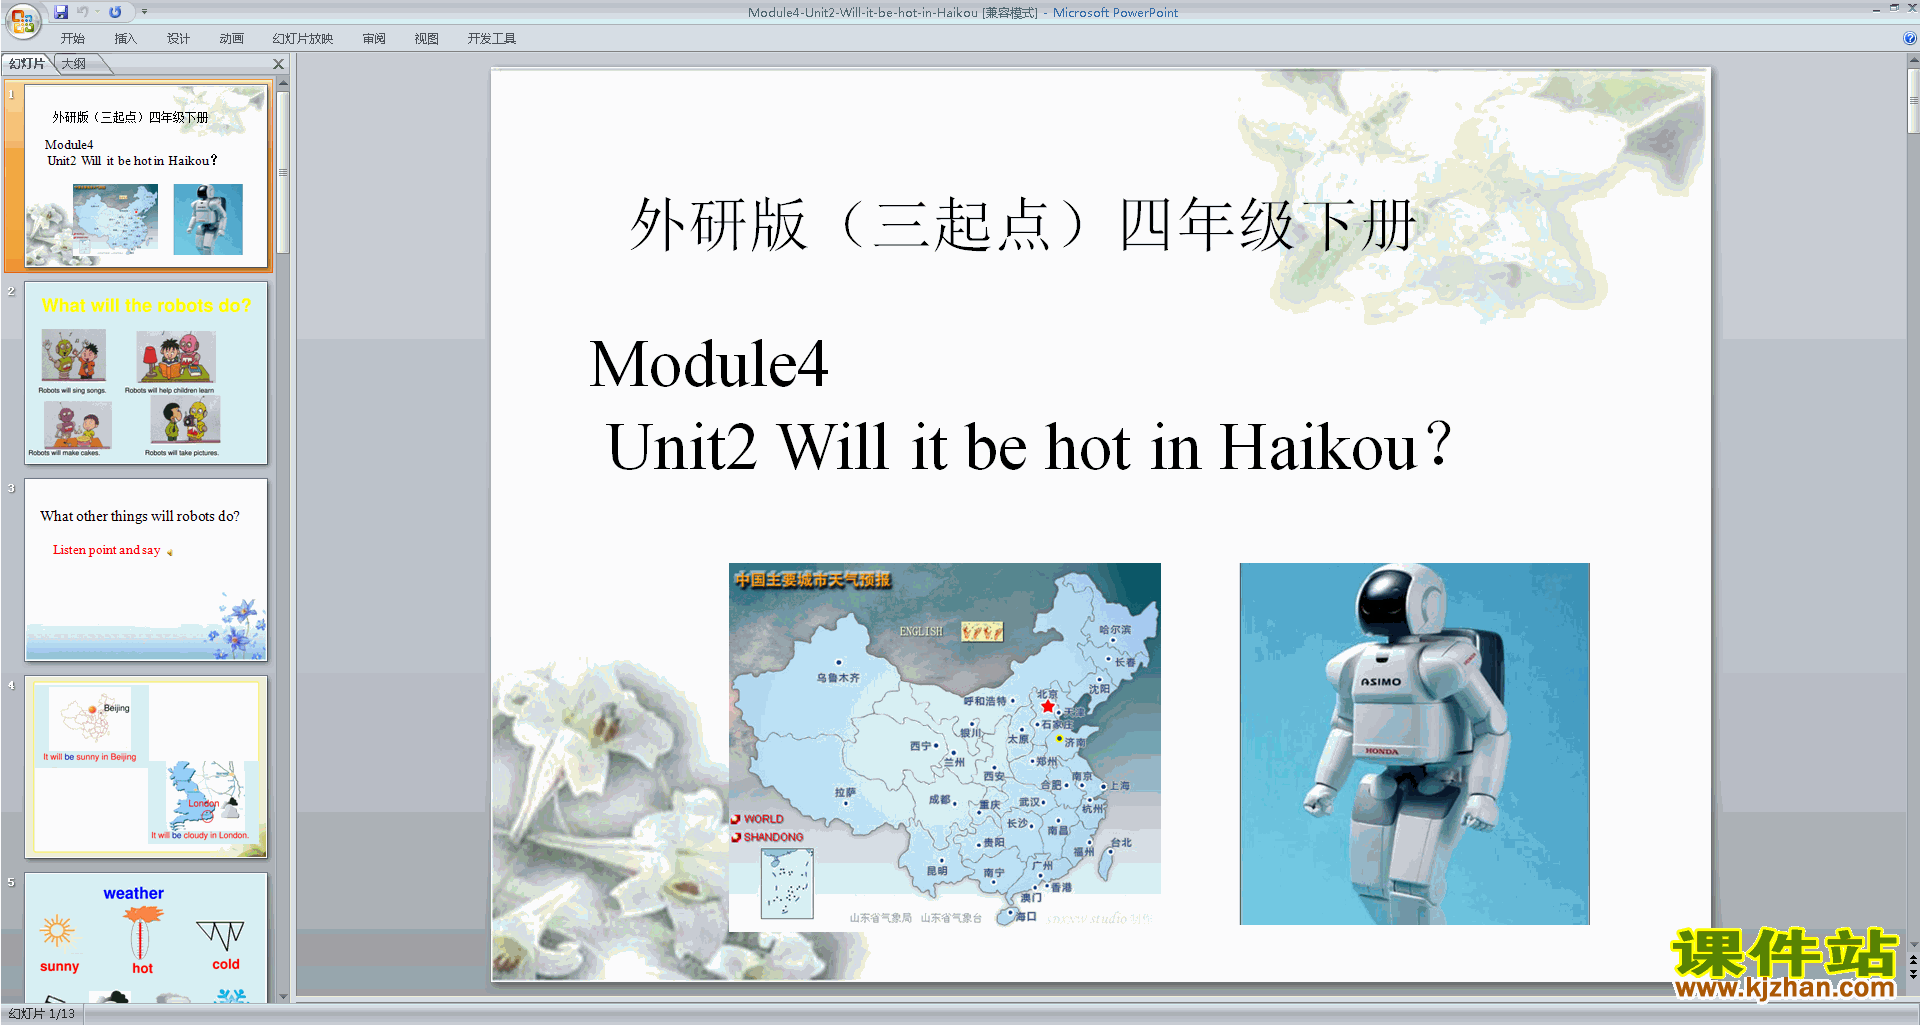 Module4 Unit2 Will it be hot in Haikoupptμ